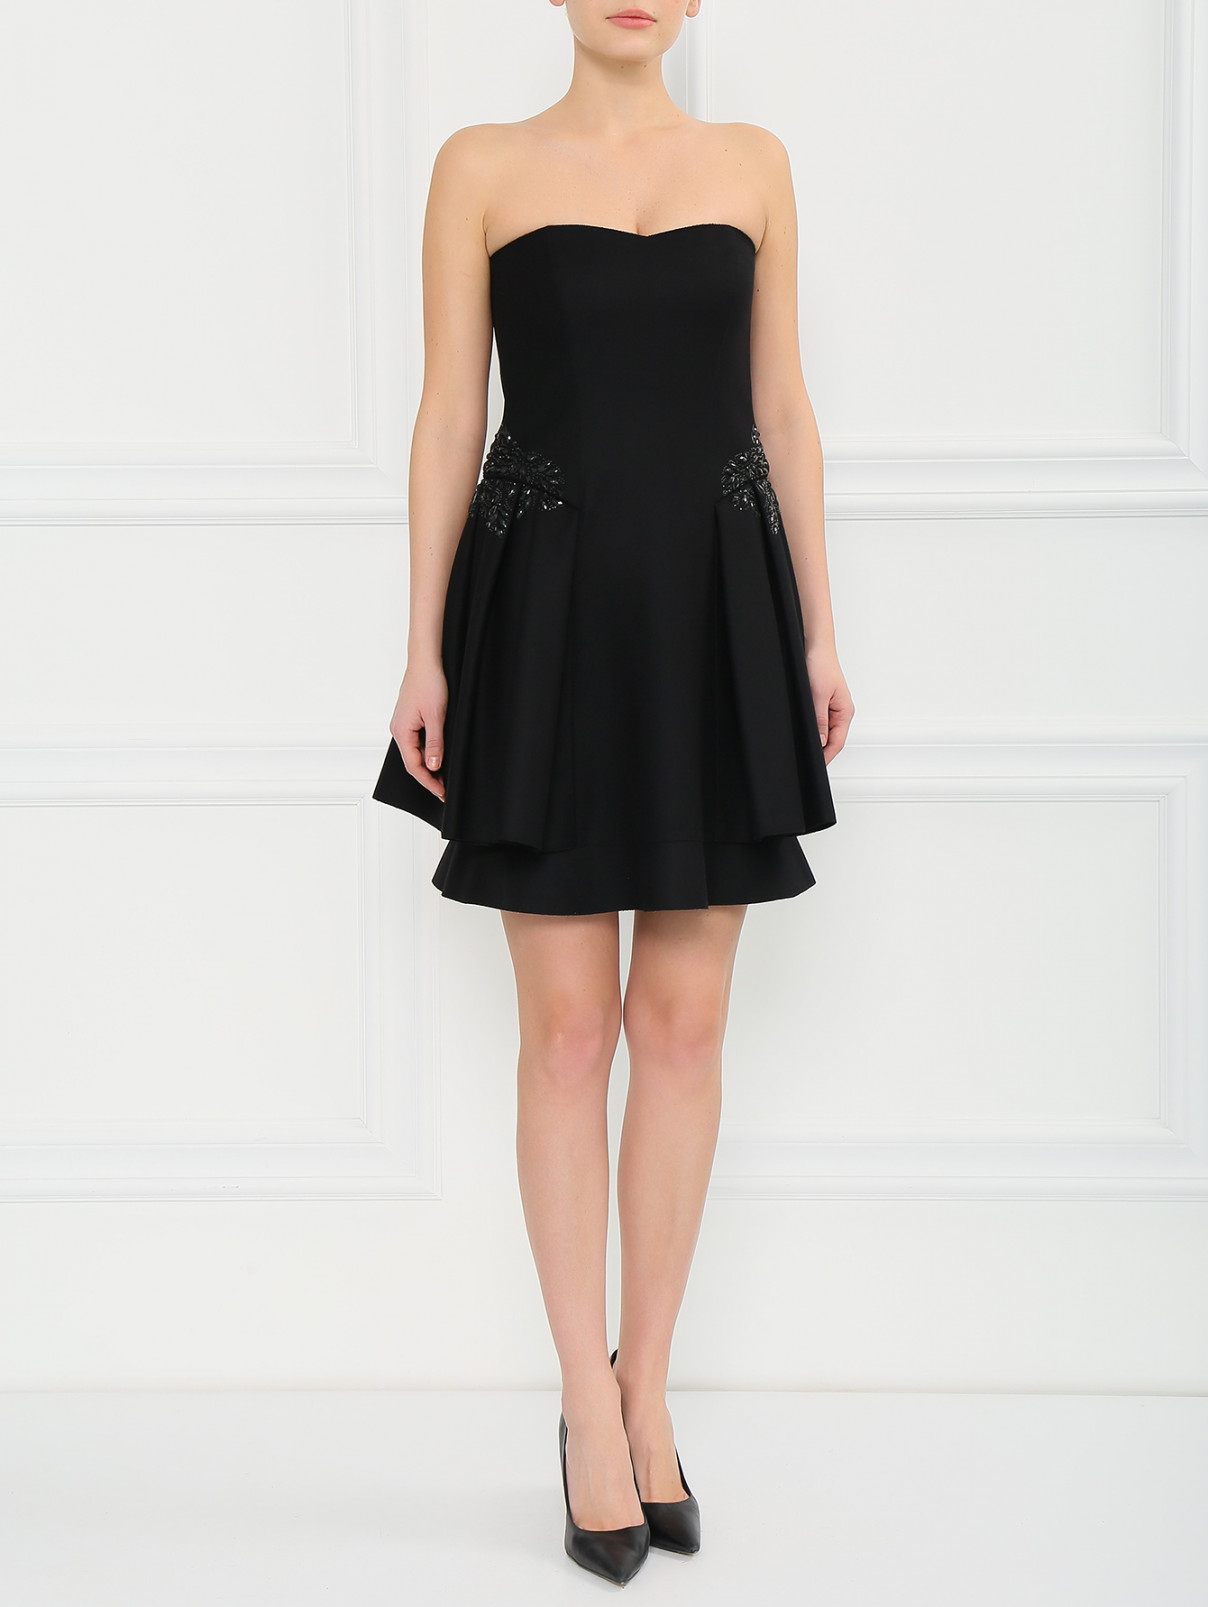 Шерстяное платье без бретелей Emporio Armani  –  Модель Общий вид  – Цвет:  Черный